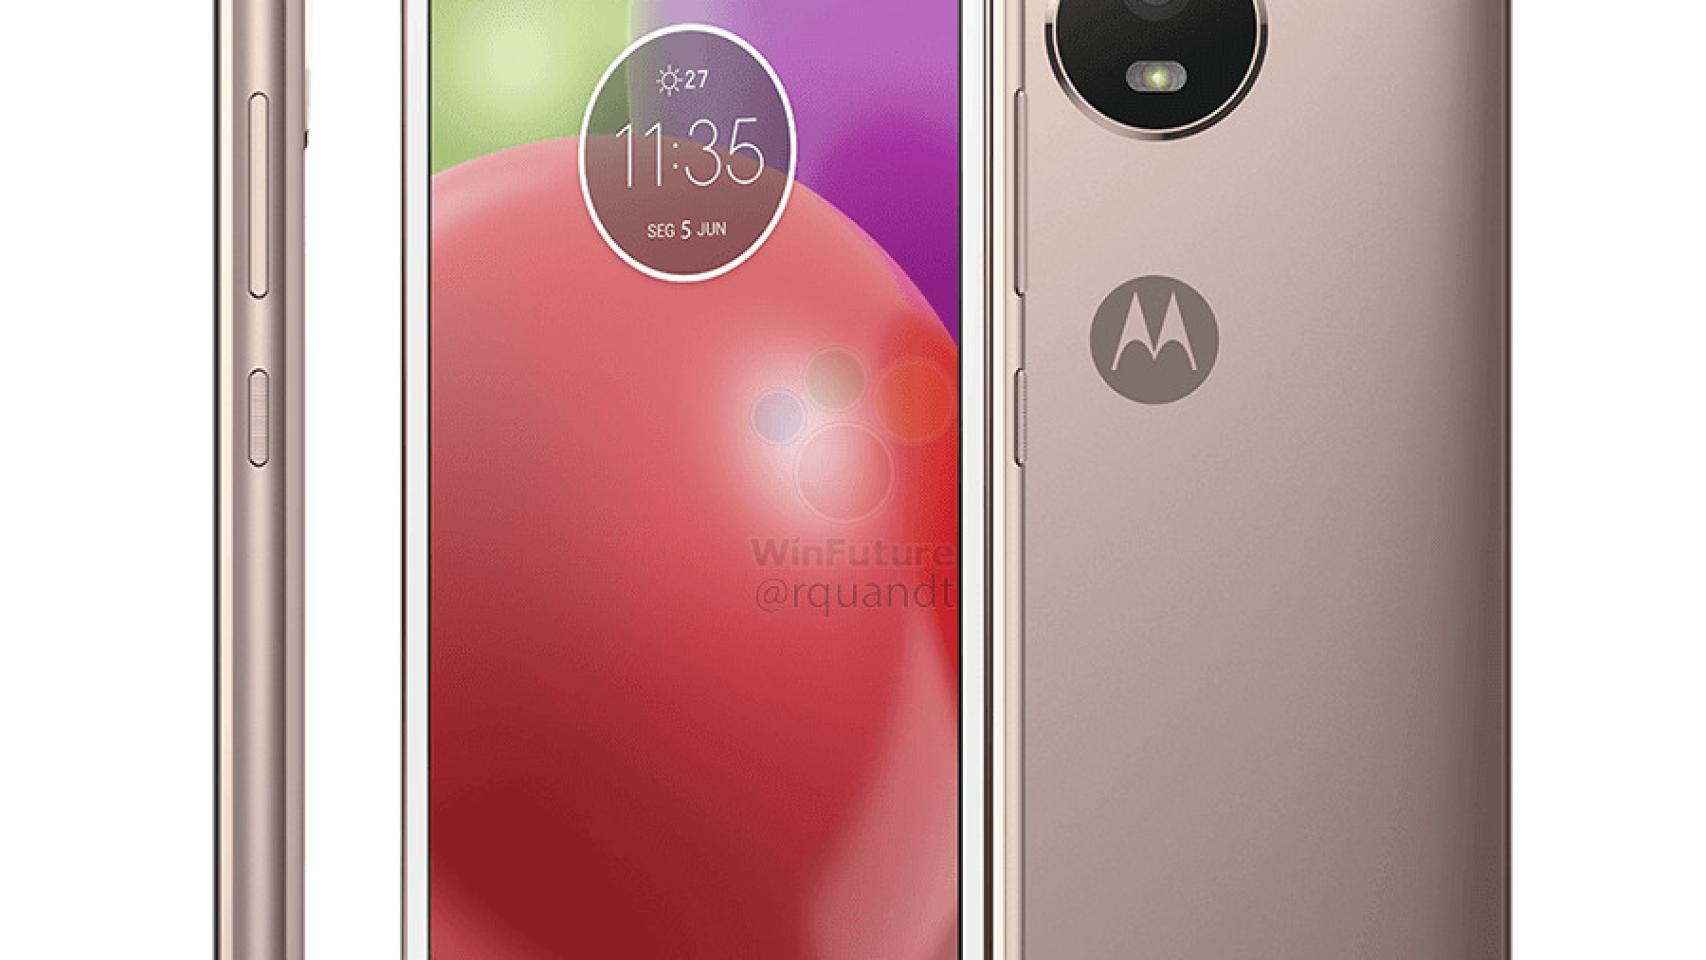 Precios de los Motorola Moto E4 y Moto E4 Plus filtrados